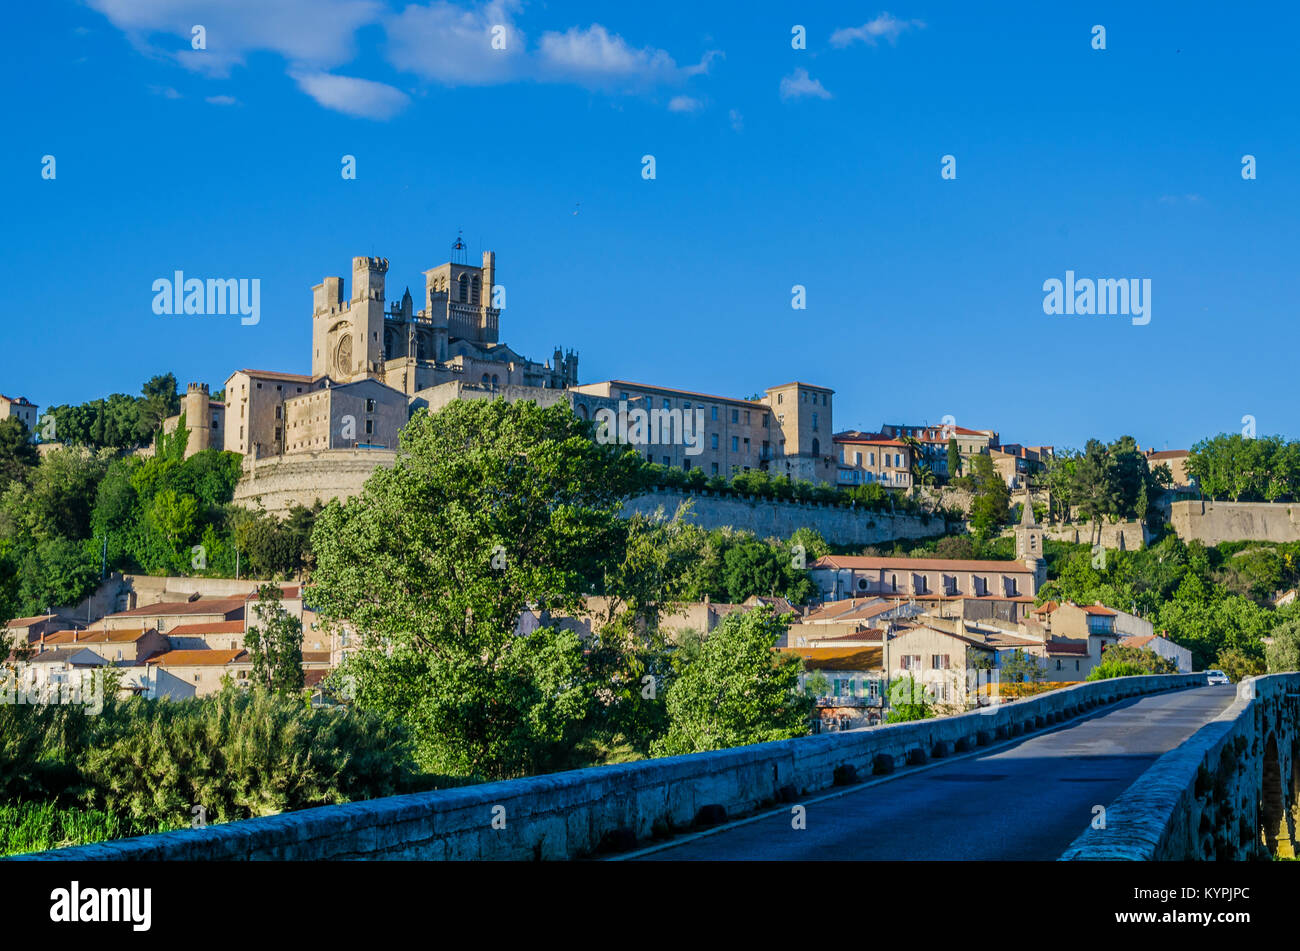 Am Ufer des Flusses Orb in der französischen Region des Languedoc ist errichtet, eine der ältesten Städte Europas, Beziers. Die Kuppel der Römisch-gotischen Stockfoto